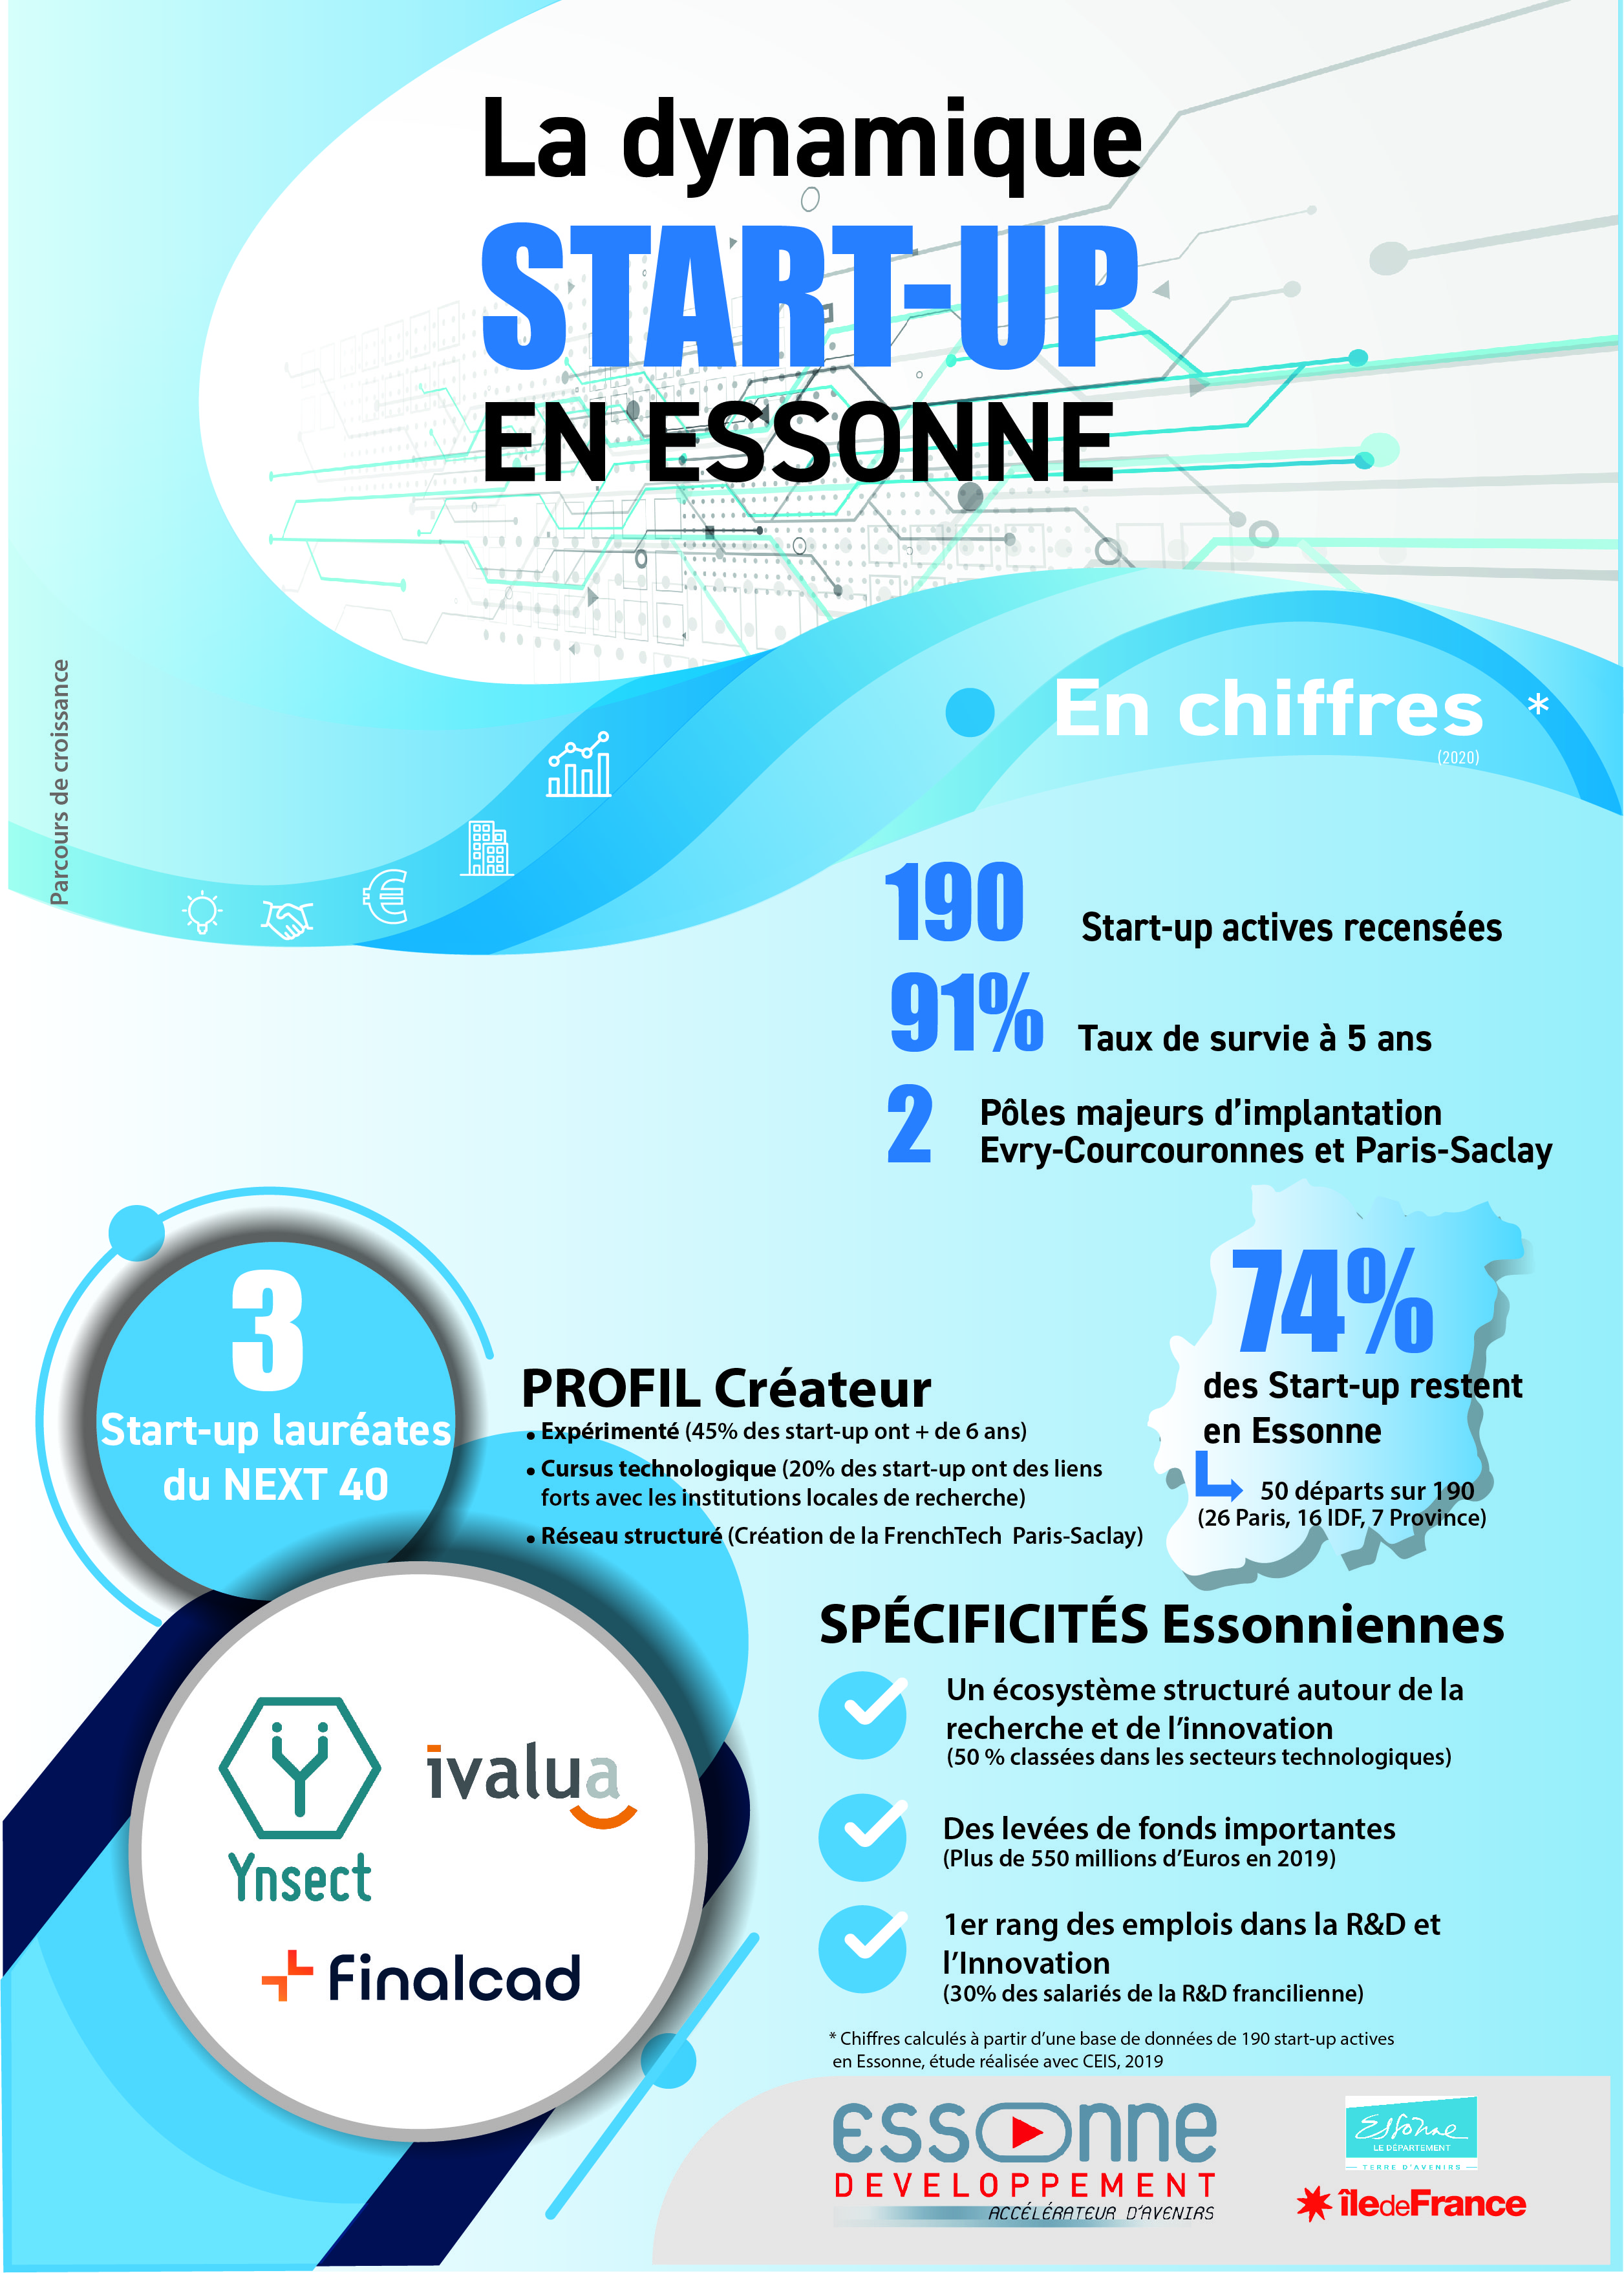 La dynamique des start-up en Essonne